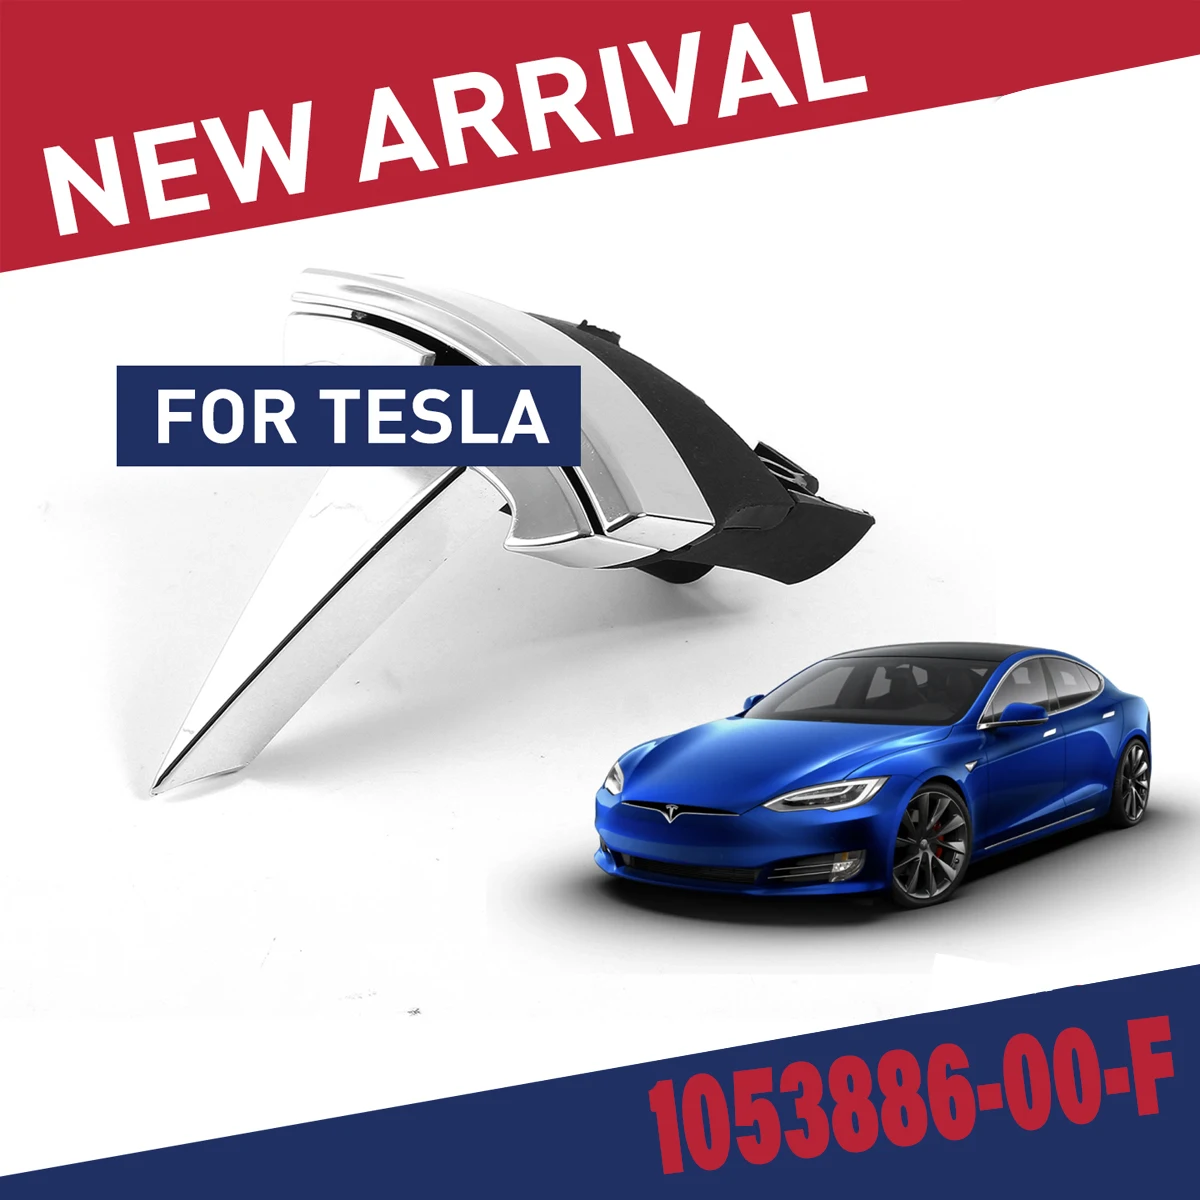 

1053686-00-F передняя решетка T логотип значок для Tesla Model S 2016-2019 OEM логотип Tesla Motors